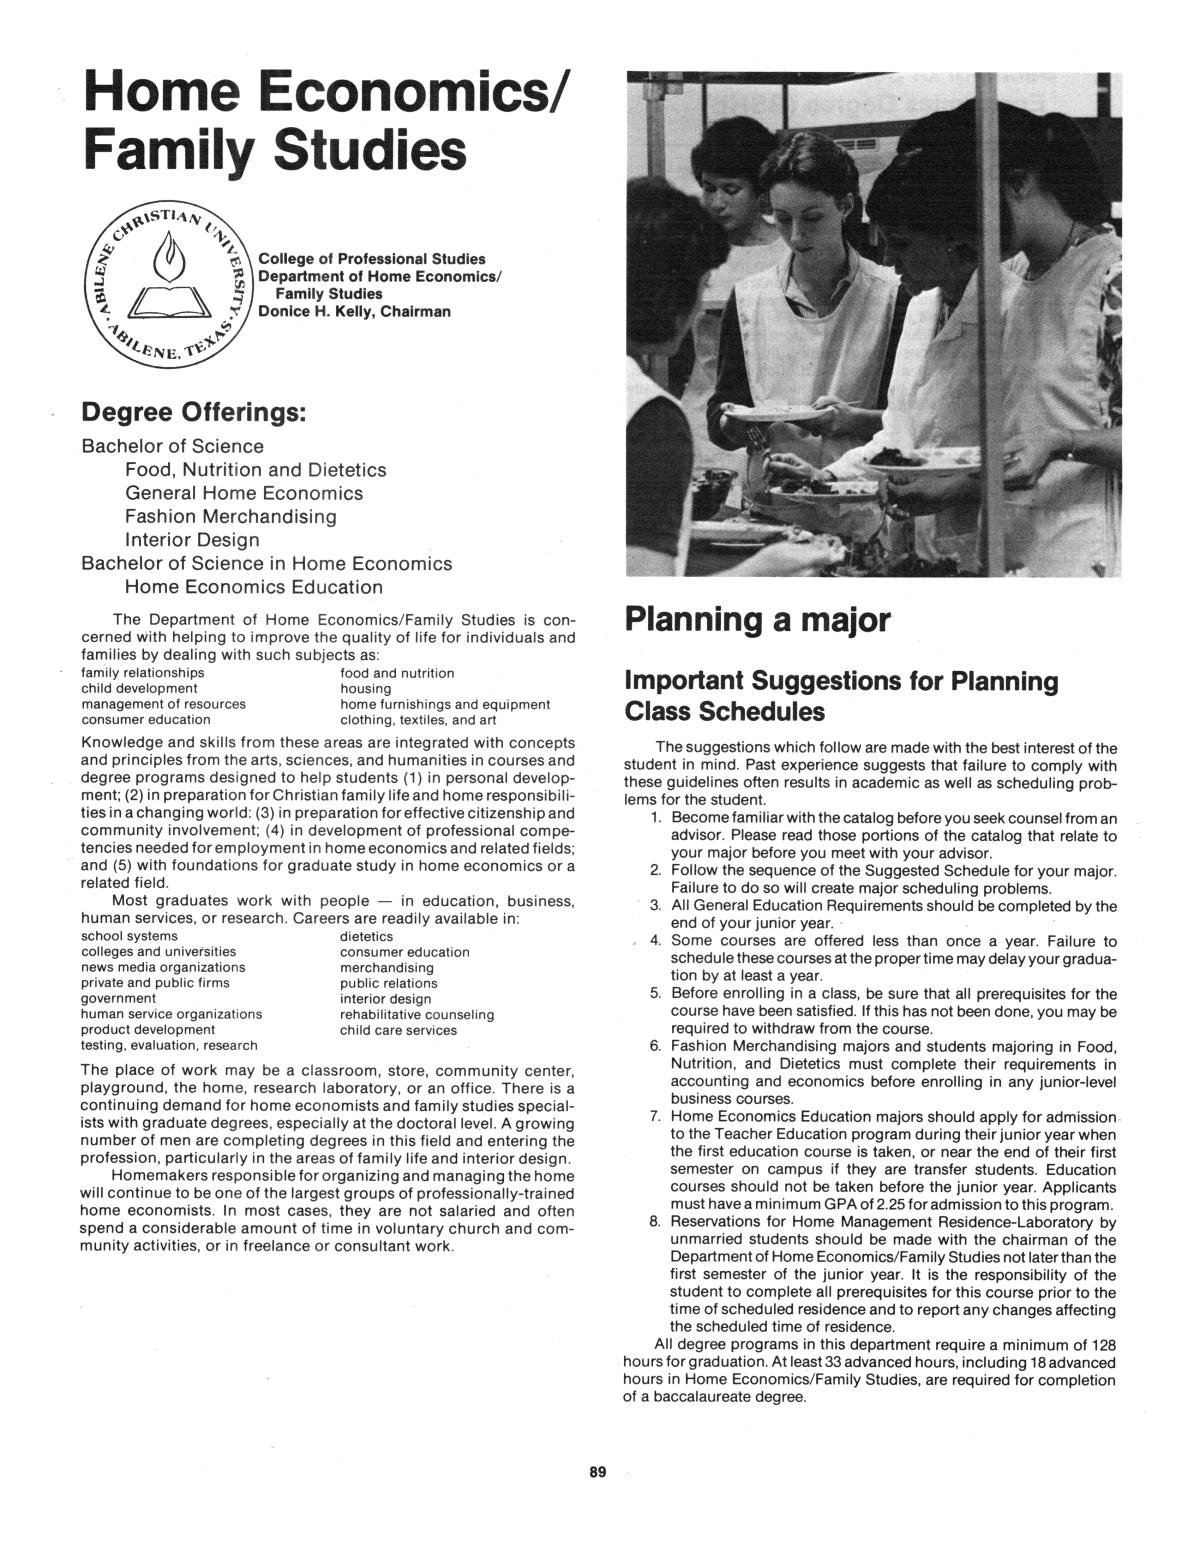 Catalog of Abilene Christian University, 1983-1984
                                                
                                                    89
                                                